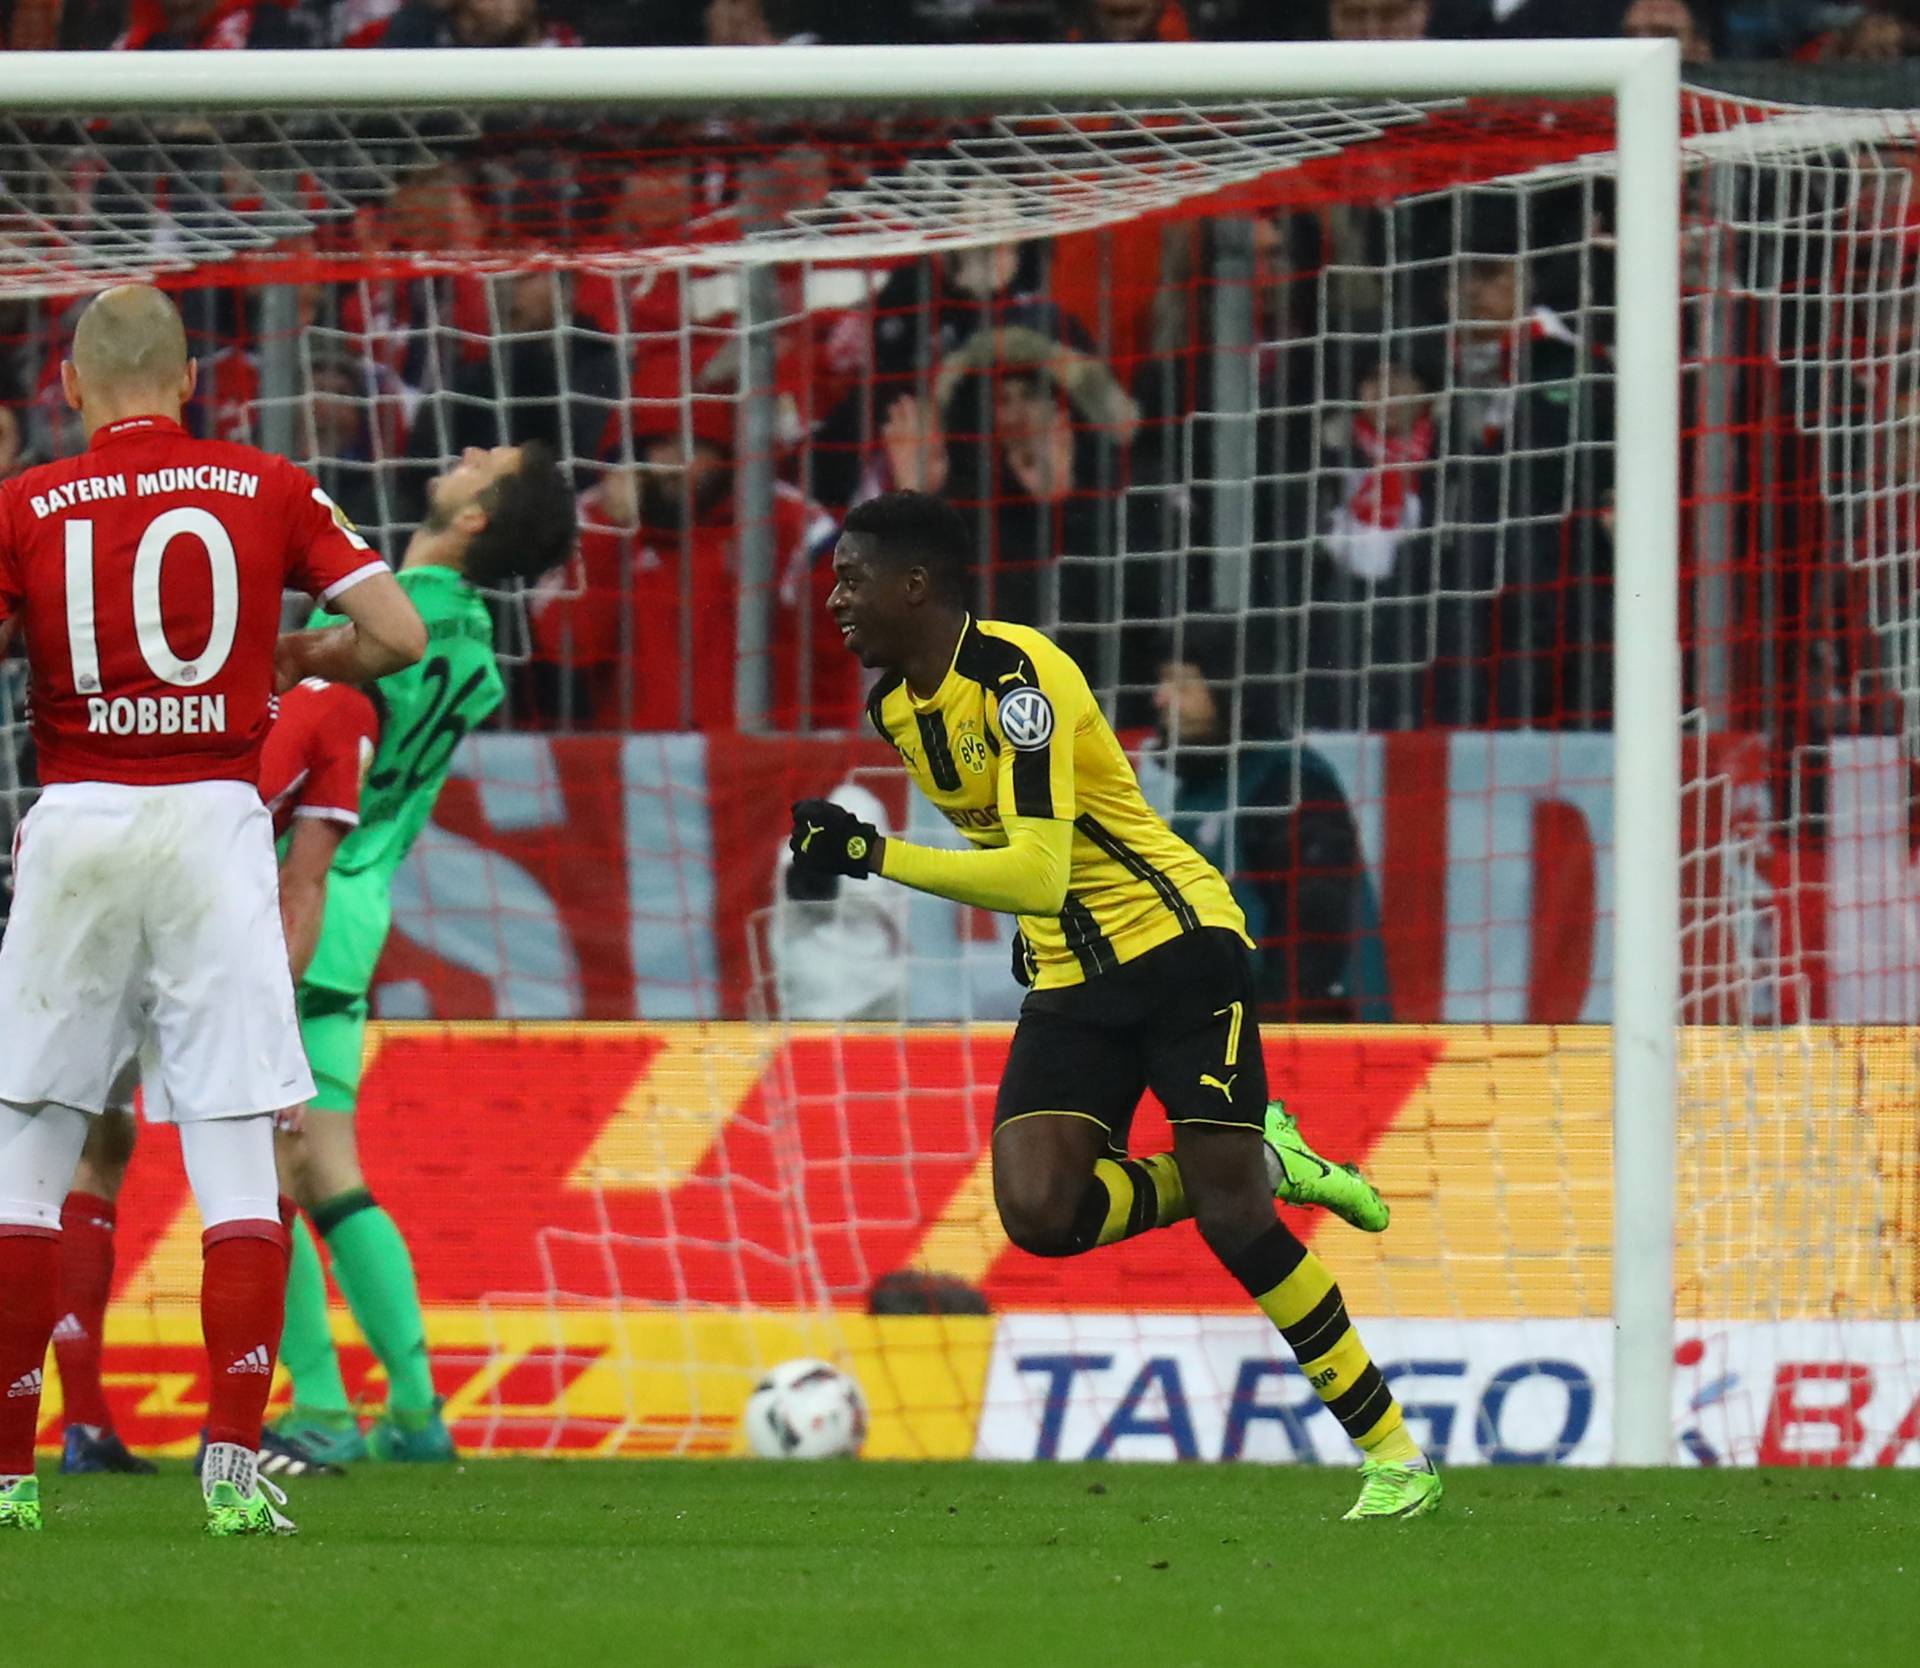 Borussia Dortmund's Ousmane Dembele celebrates scoring their third goal